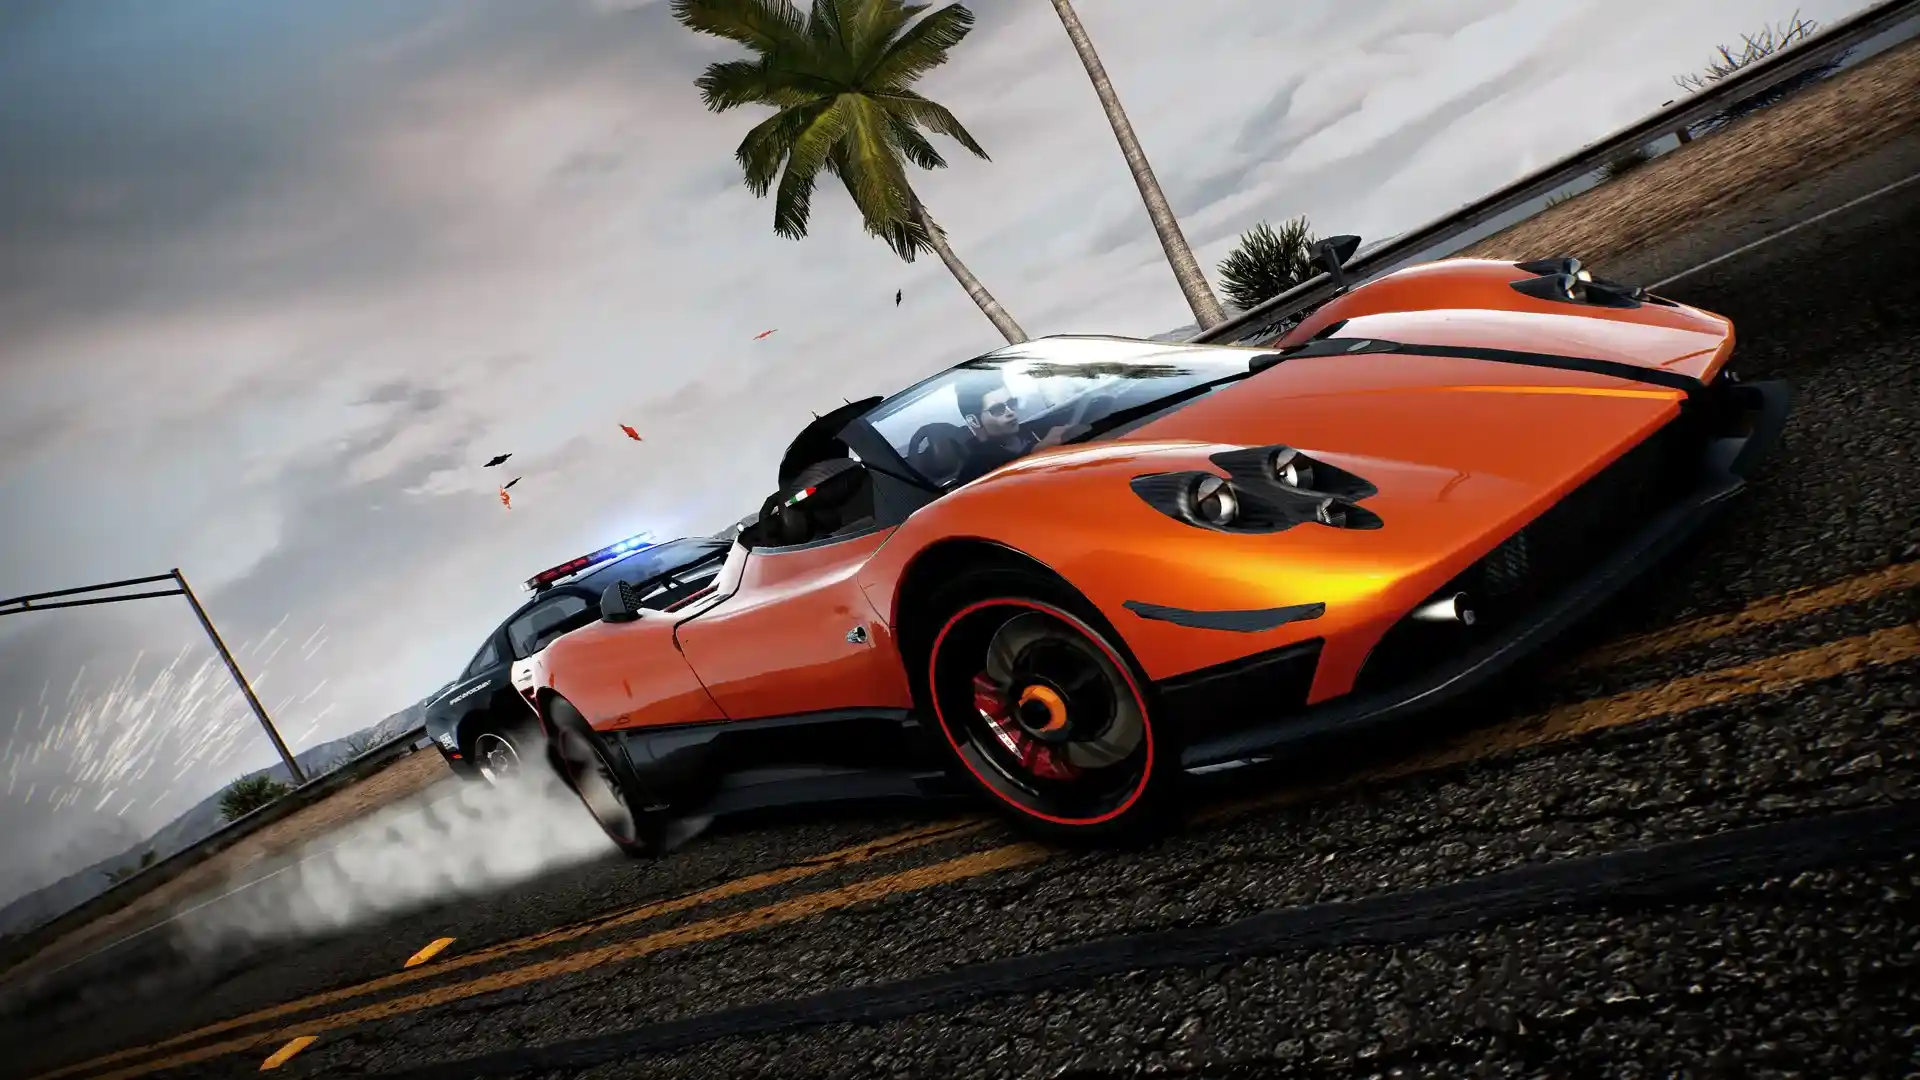  اکانت قانونی Need for Speed Hot Pursuit Remastered برای PS4 & PS5 